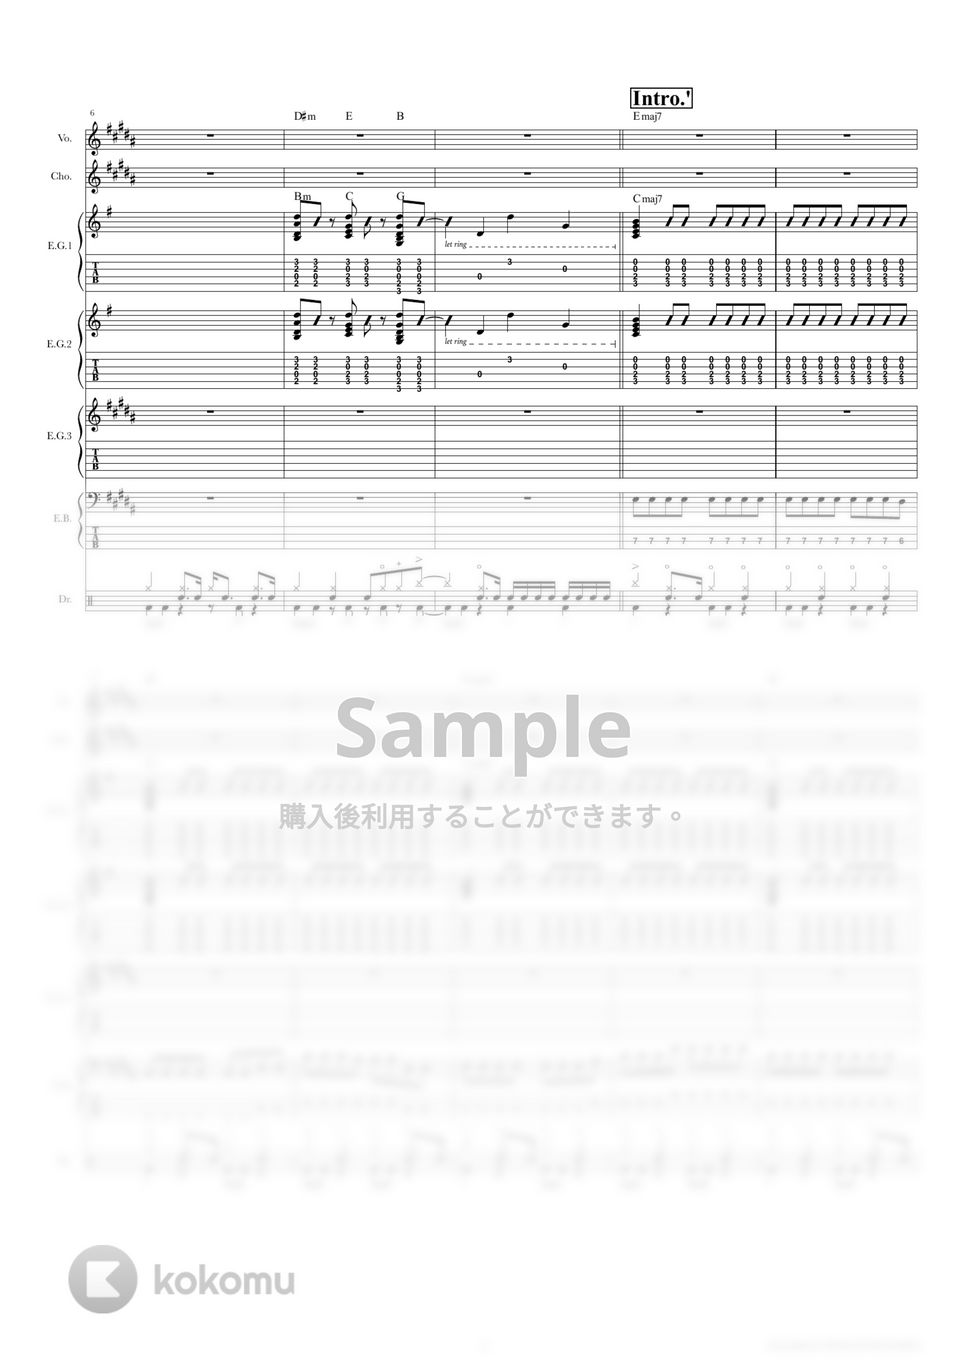 yonige - ワンルーム (バンドスコア) by TRIAD GUITAR SCHOOL